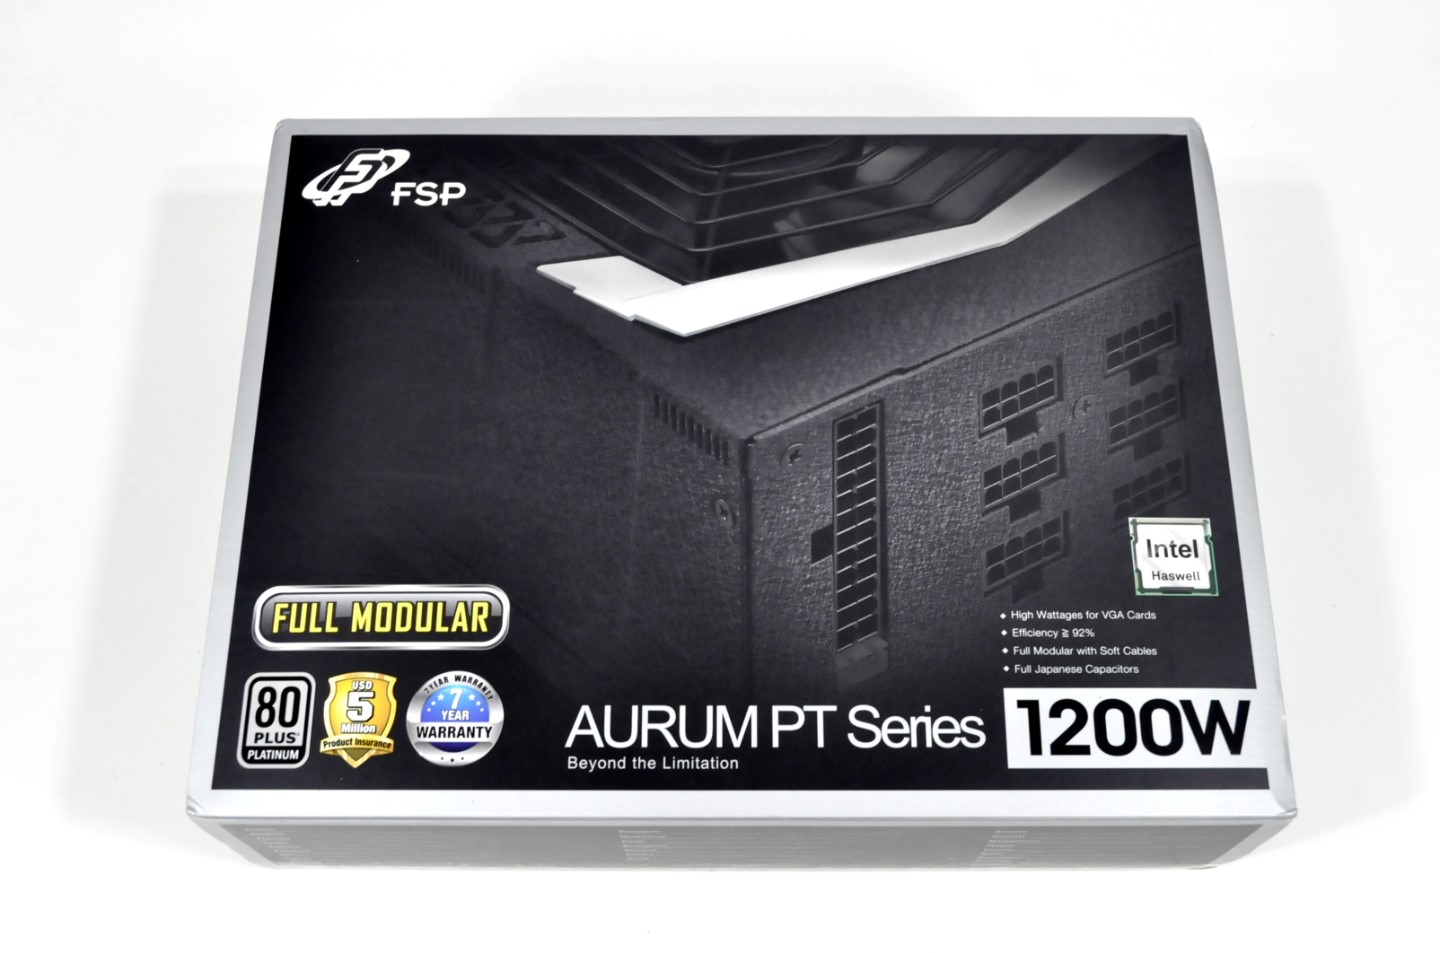 FSP Aurum PT 1200W Power